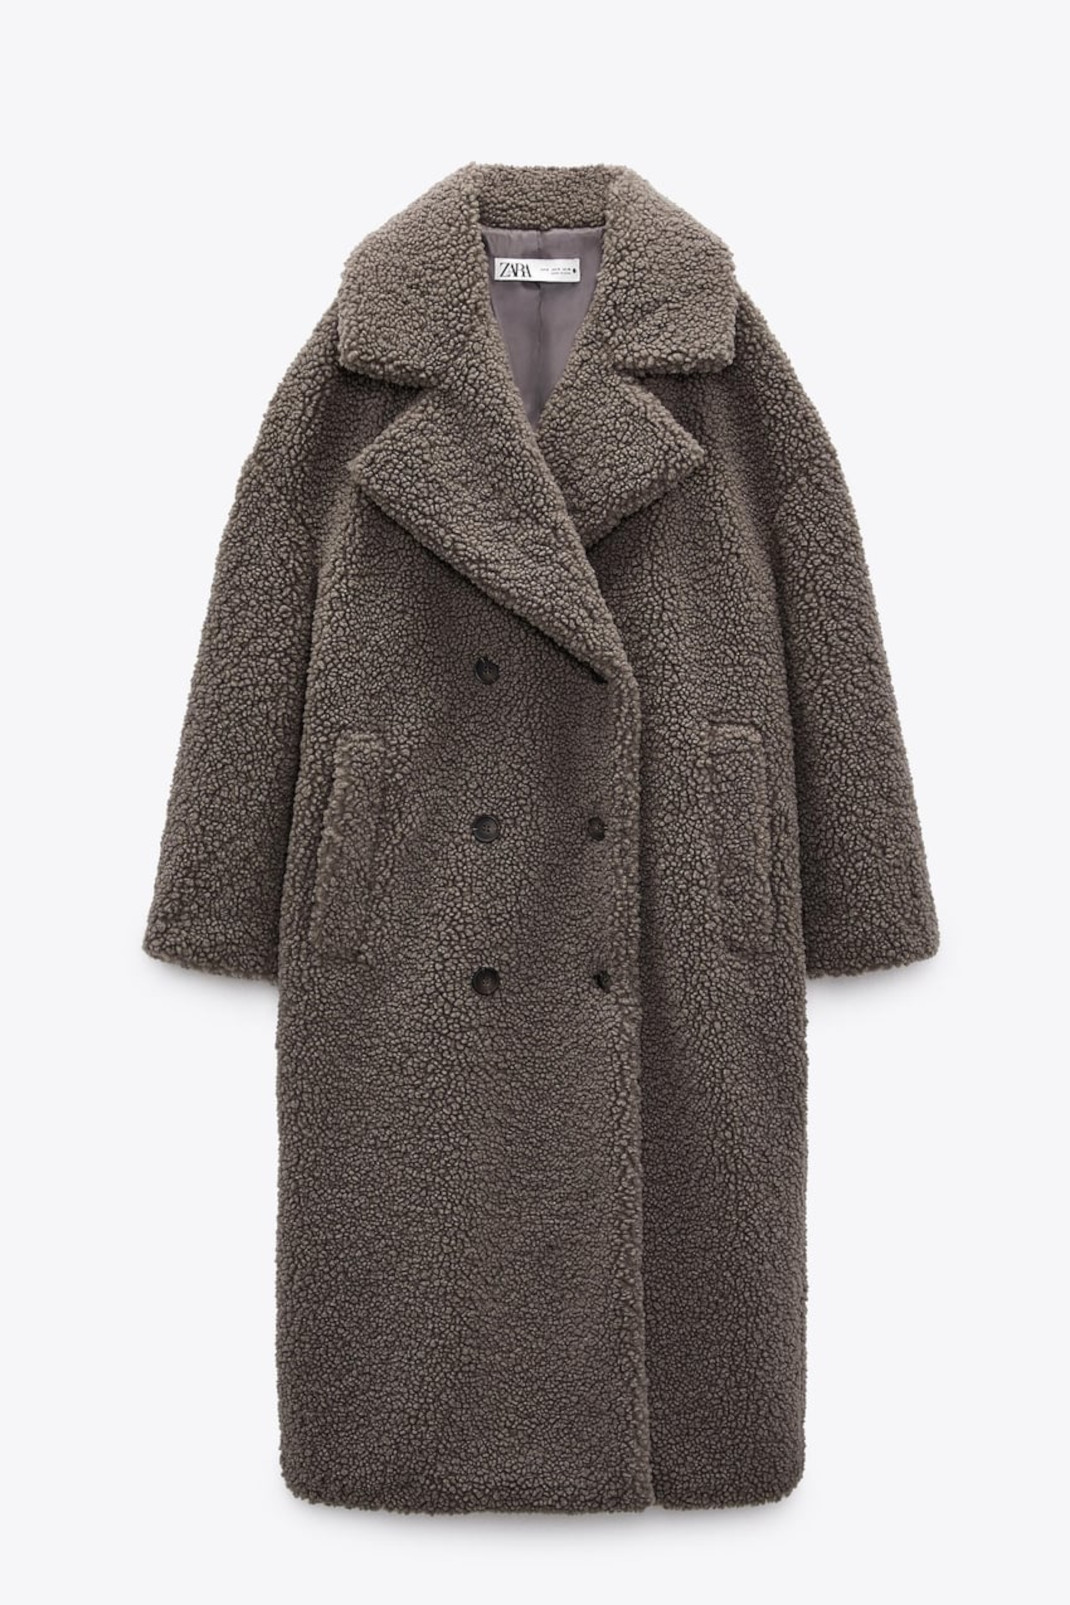 Η Δούκισσα Νομικού με στιλάτο teddy coat -Βρήκαμε ένα παρόμοιο από τη νέα συλλογή των Zara 